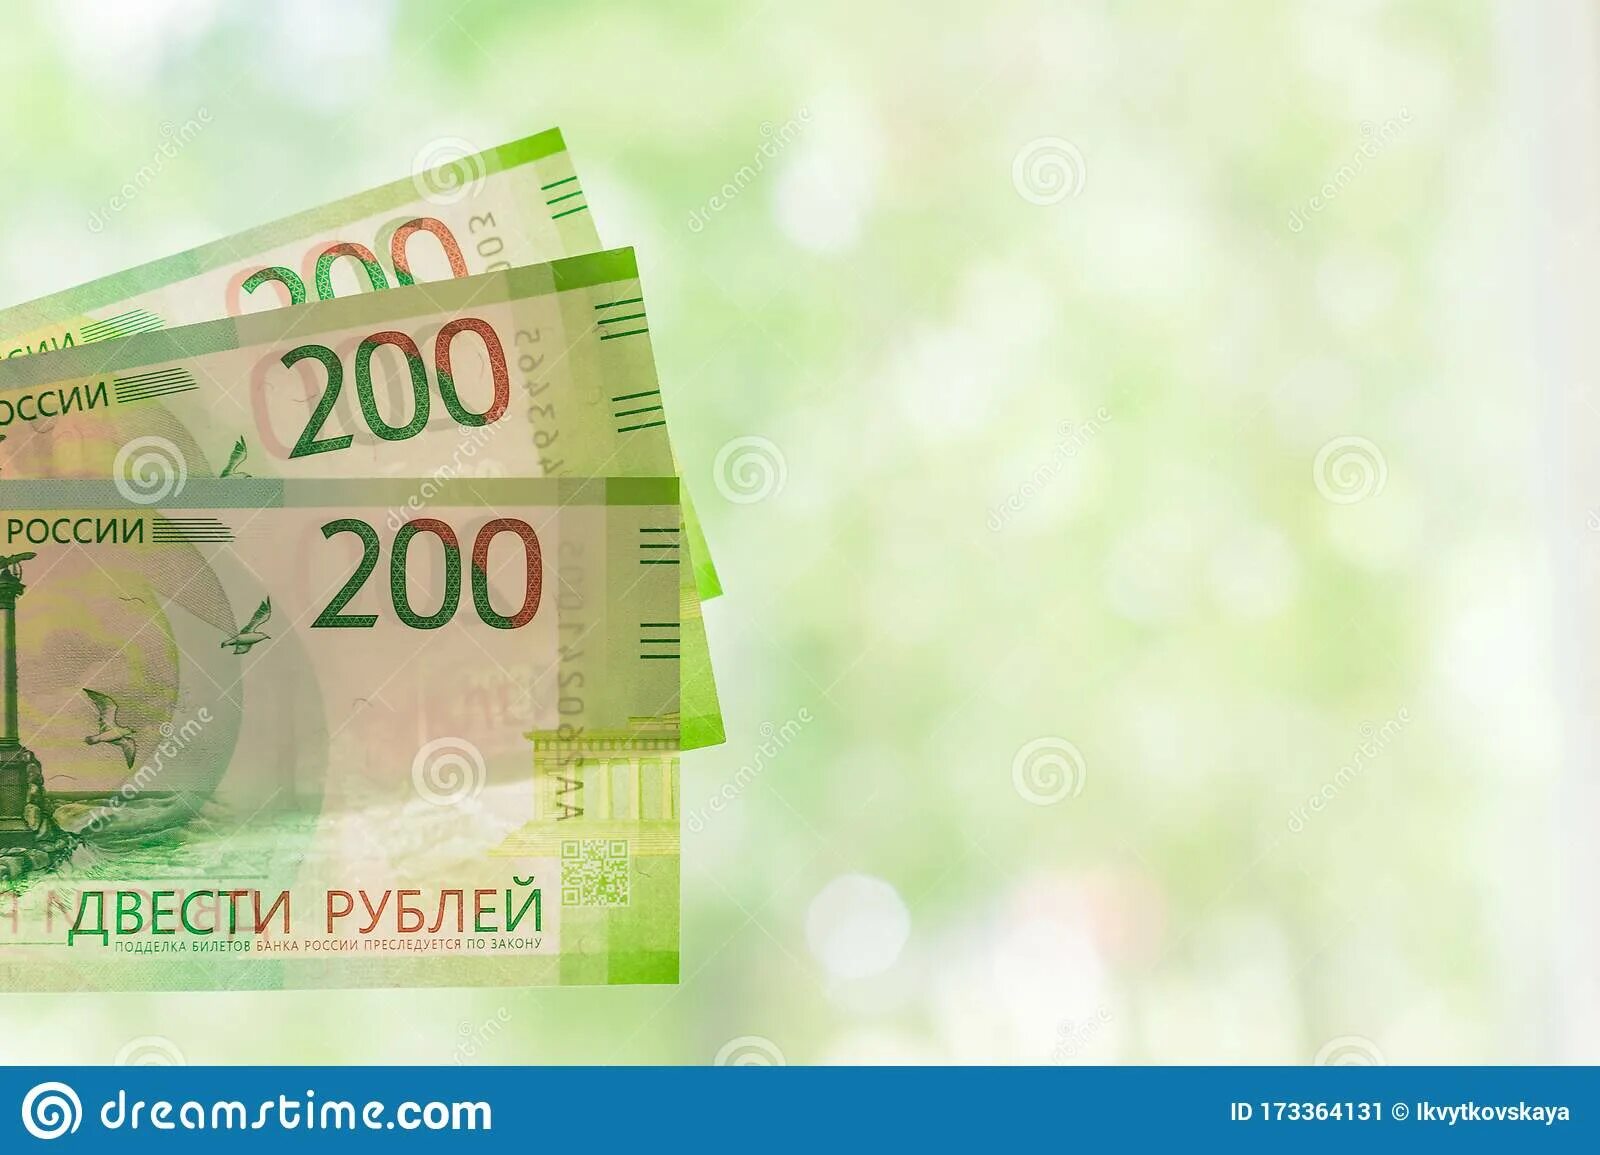 100 Рублей на зелёном фоне. 200 Рублей за отзыв. 200 Рублей на зеленом фоне. Скидка 200 рублей за отзыв.